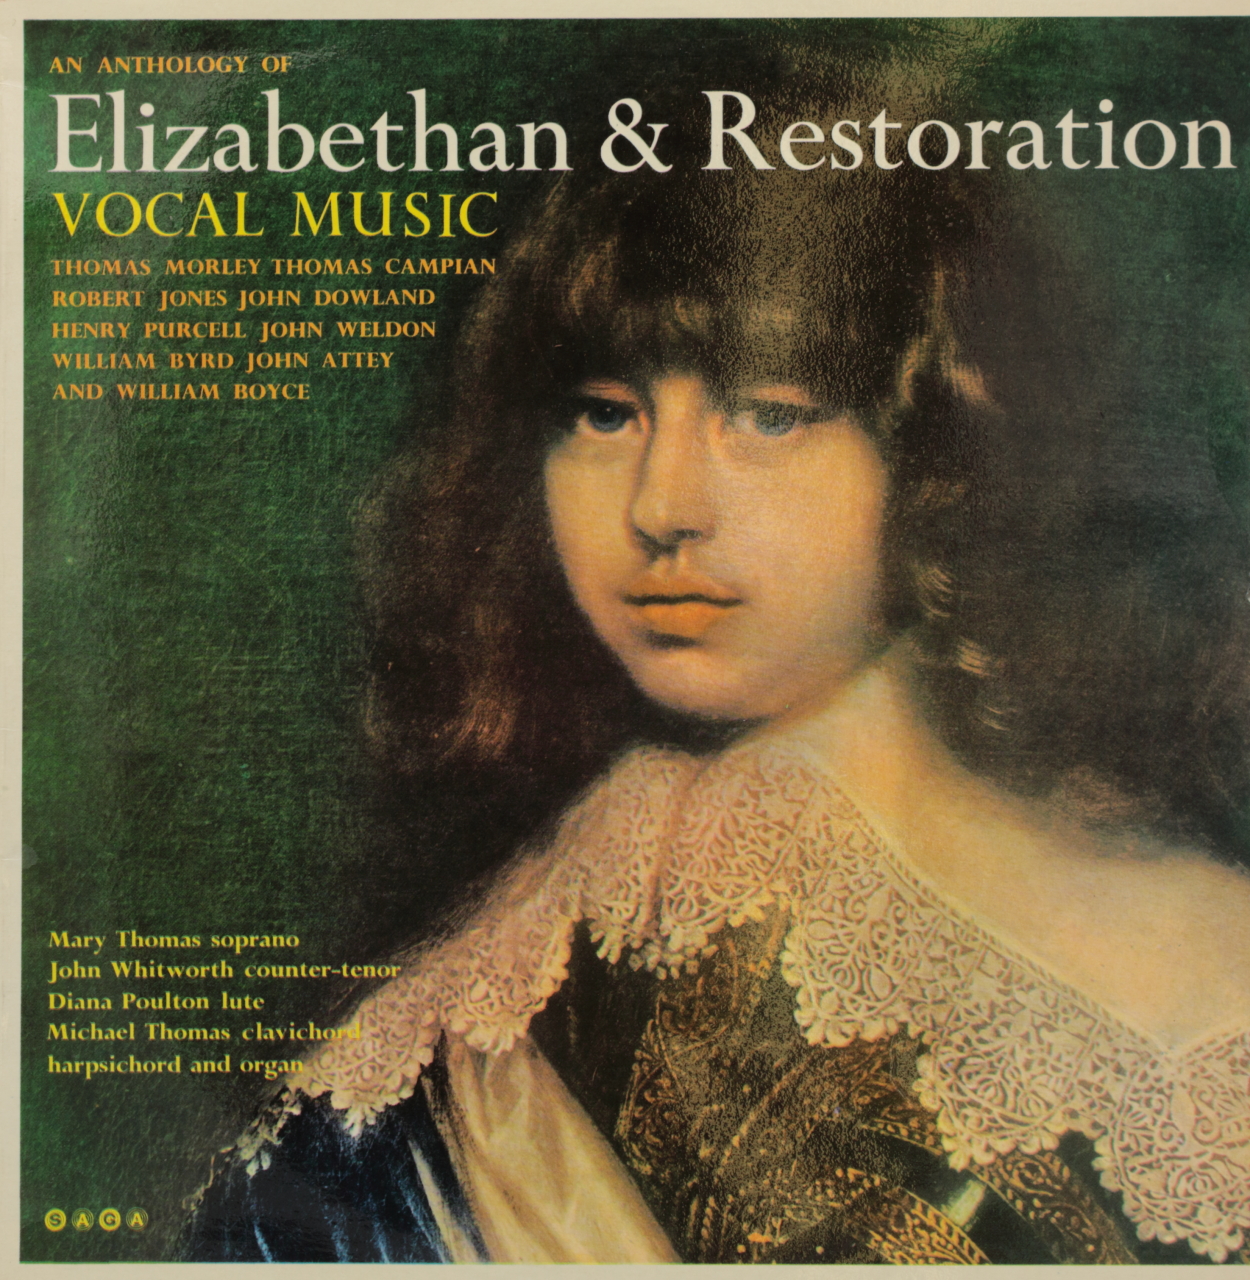 An Anthology of Elizabethan & Restoration Vocal Music